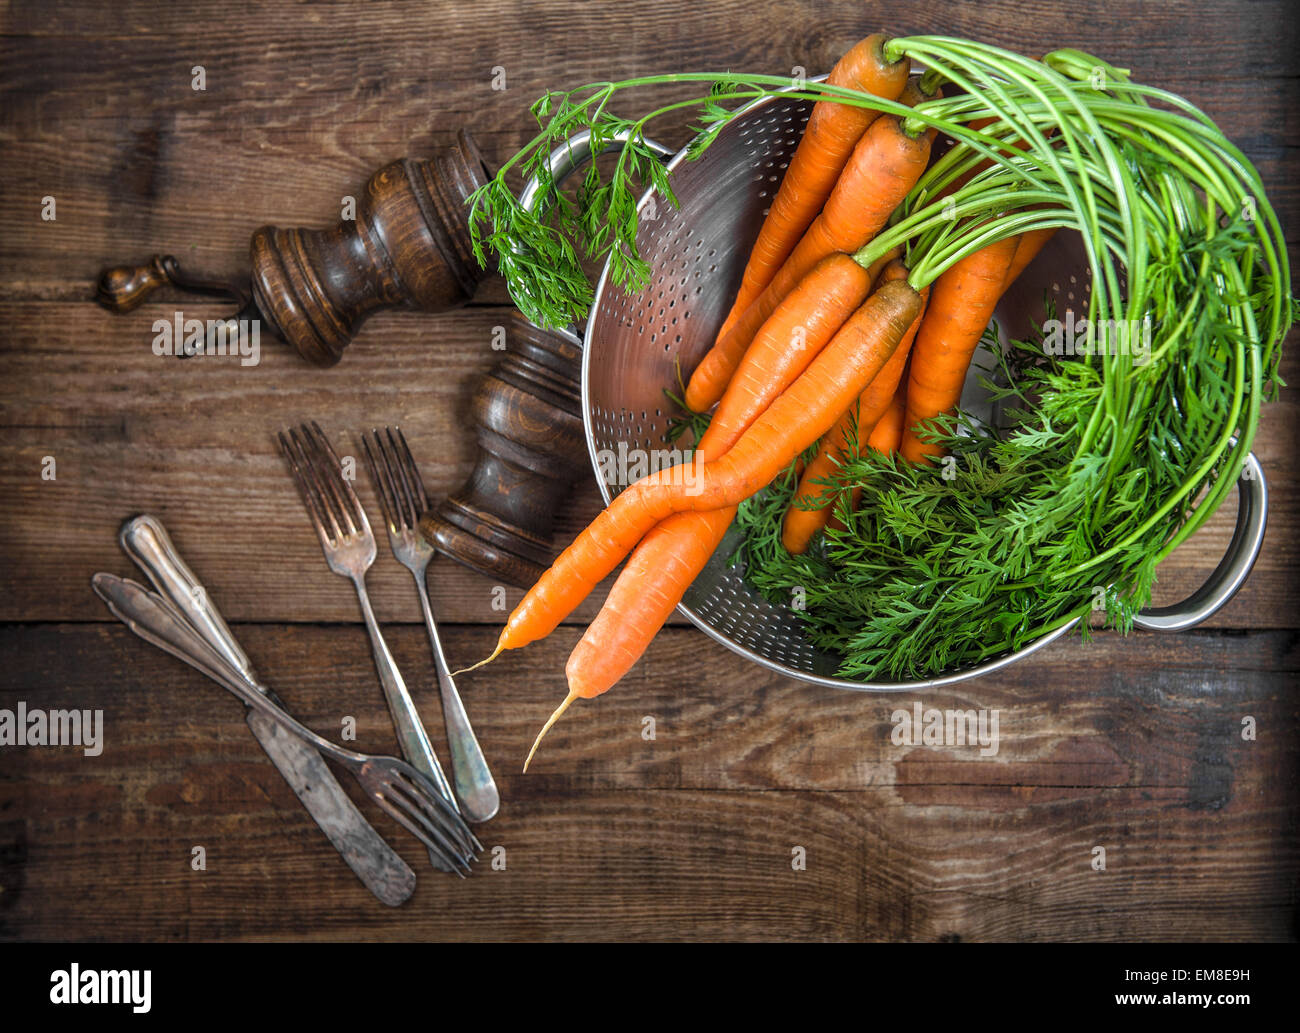 Les racines de carottes avec feuilles vertes sur fond de bois rustique. Légume. Concept alimentaire style vintage Banque D'Images